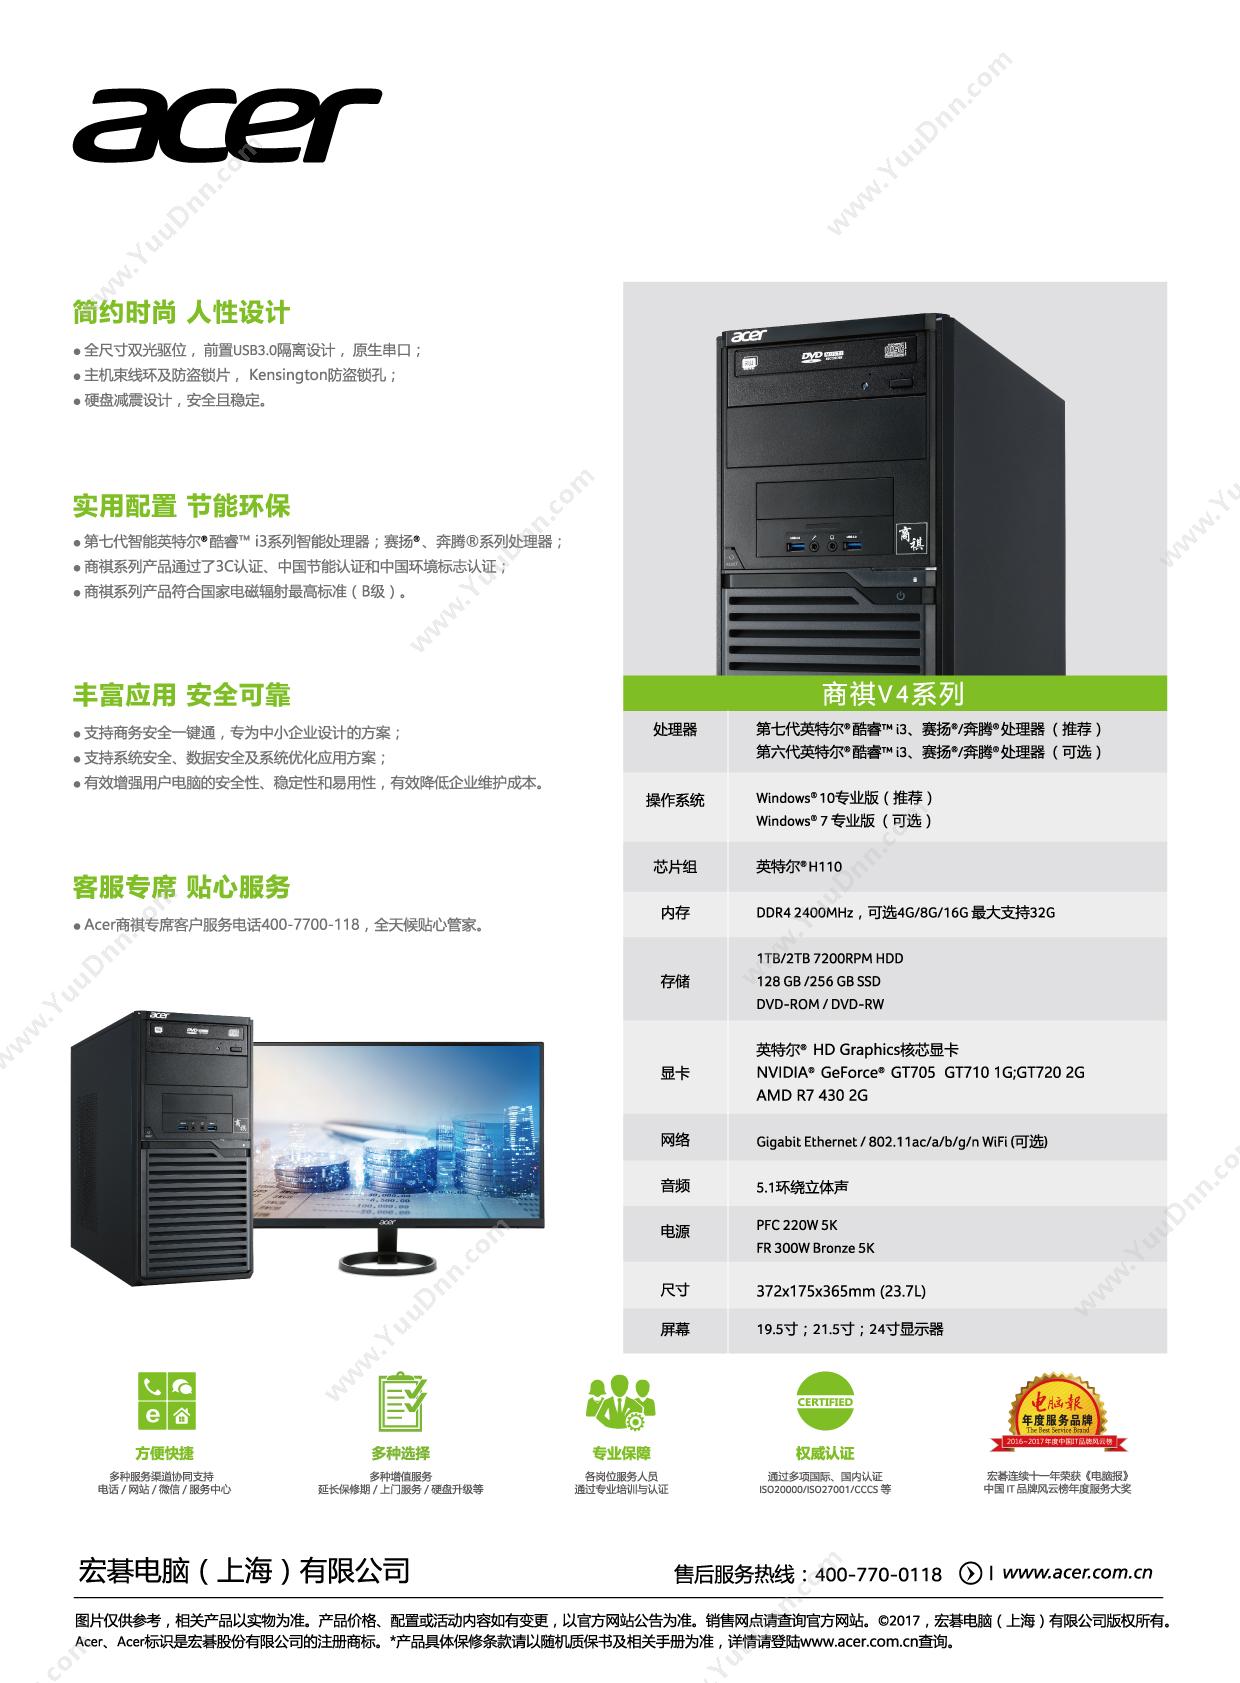 宏碁 Acer V4220I3-7100/4G/1T/21.5 台式机    I3 4G DDR4 2400MHz  1TB 7200转 SATA3硬盘 21.5 寸 台式电脑套机